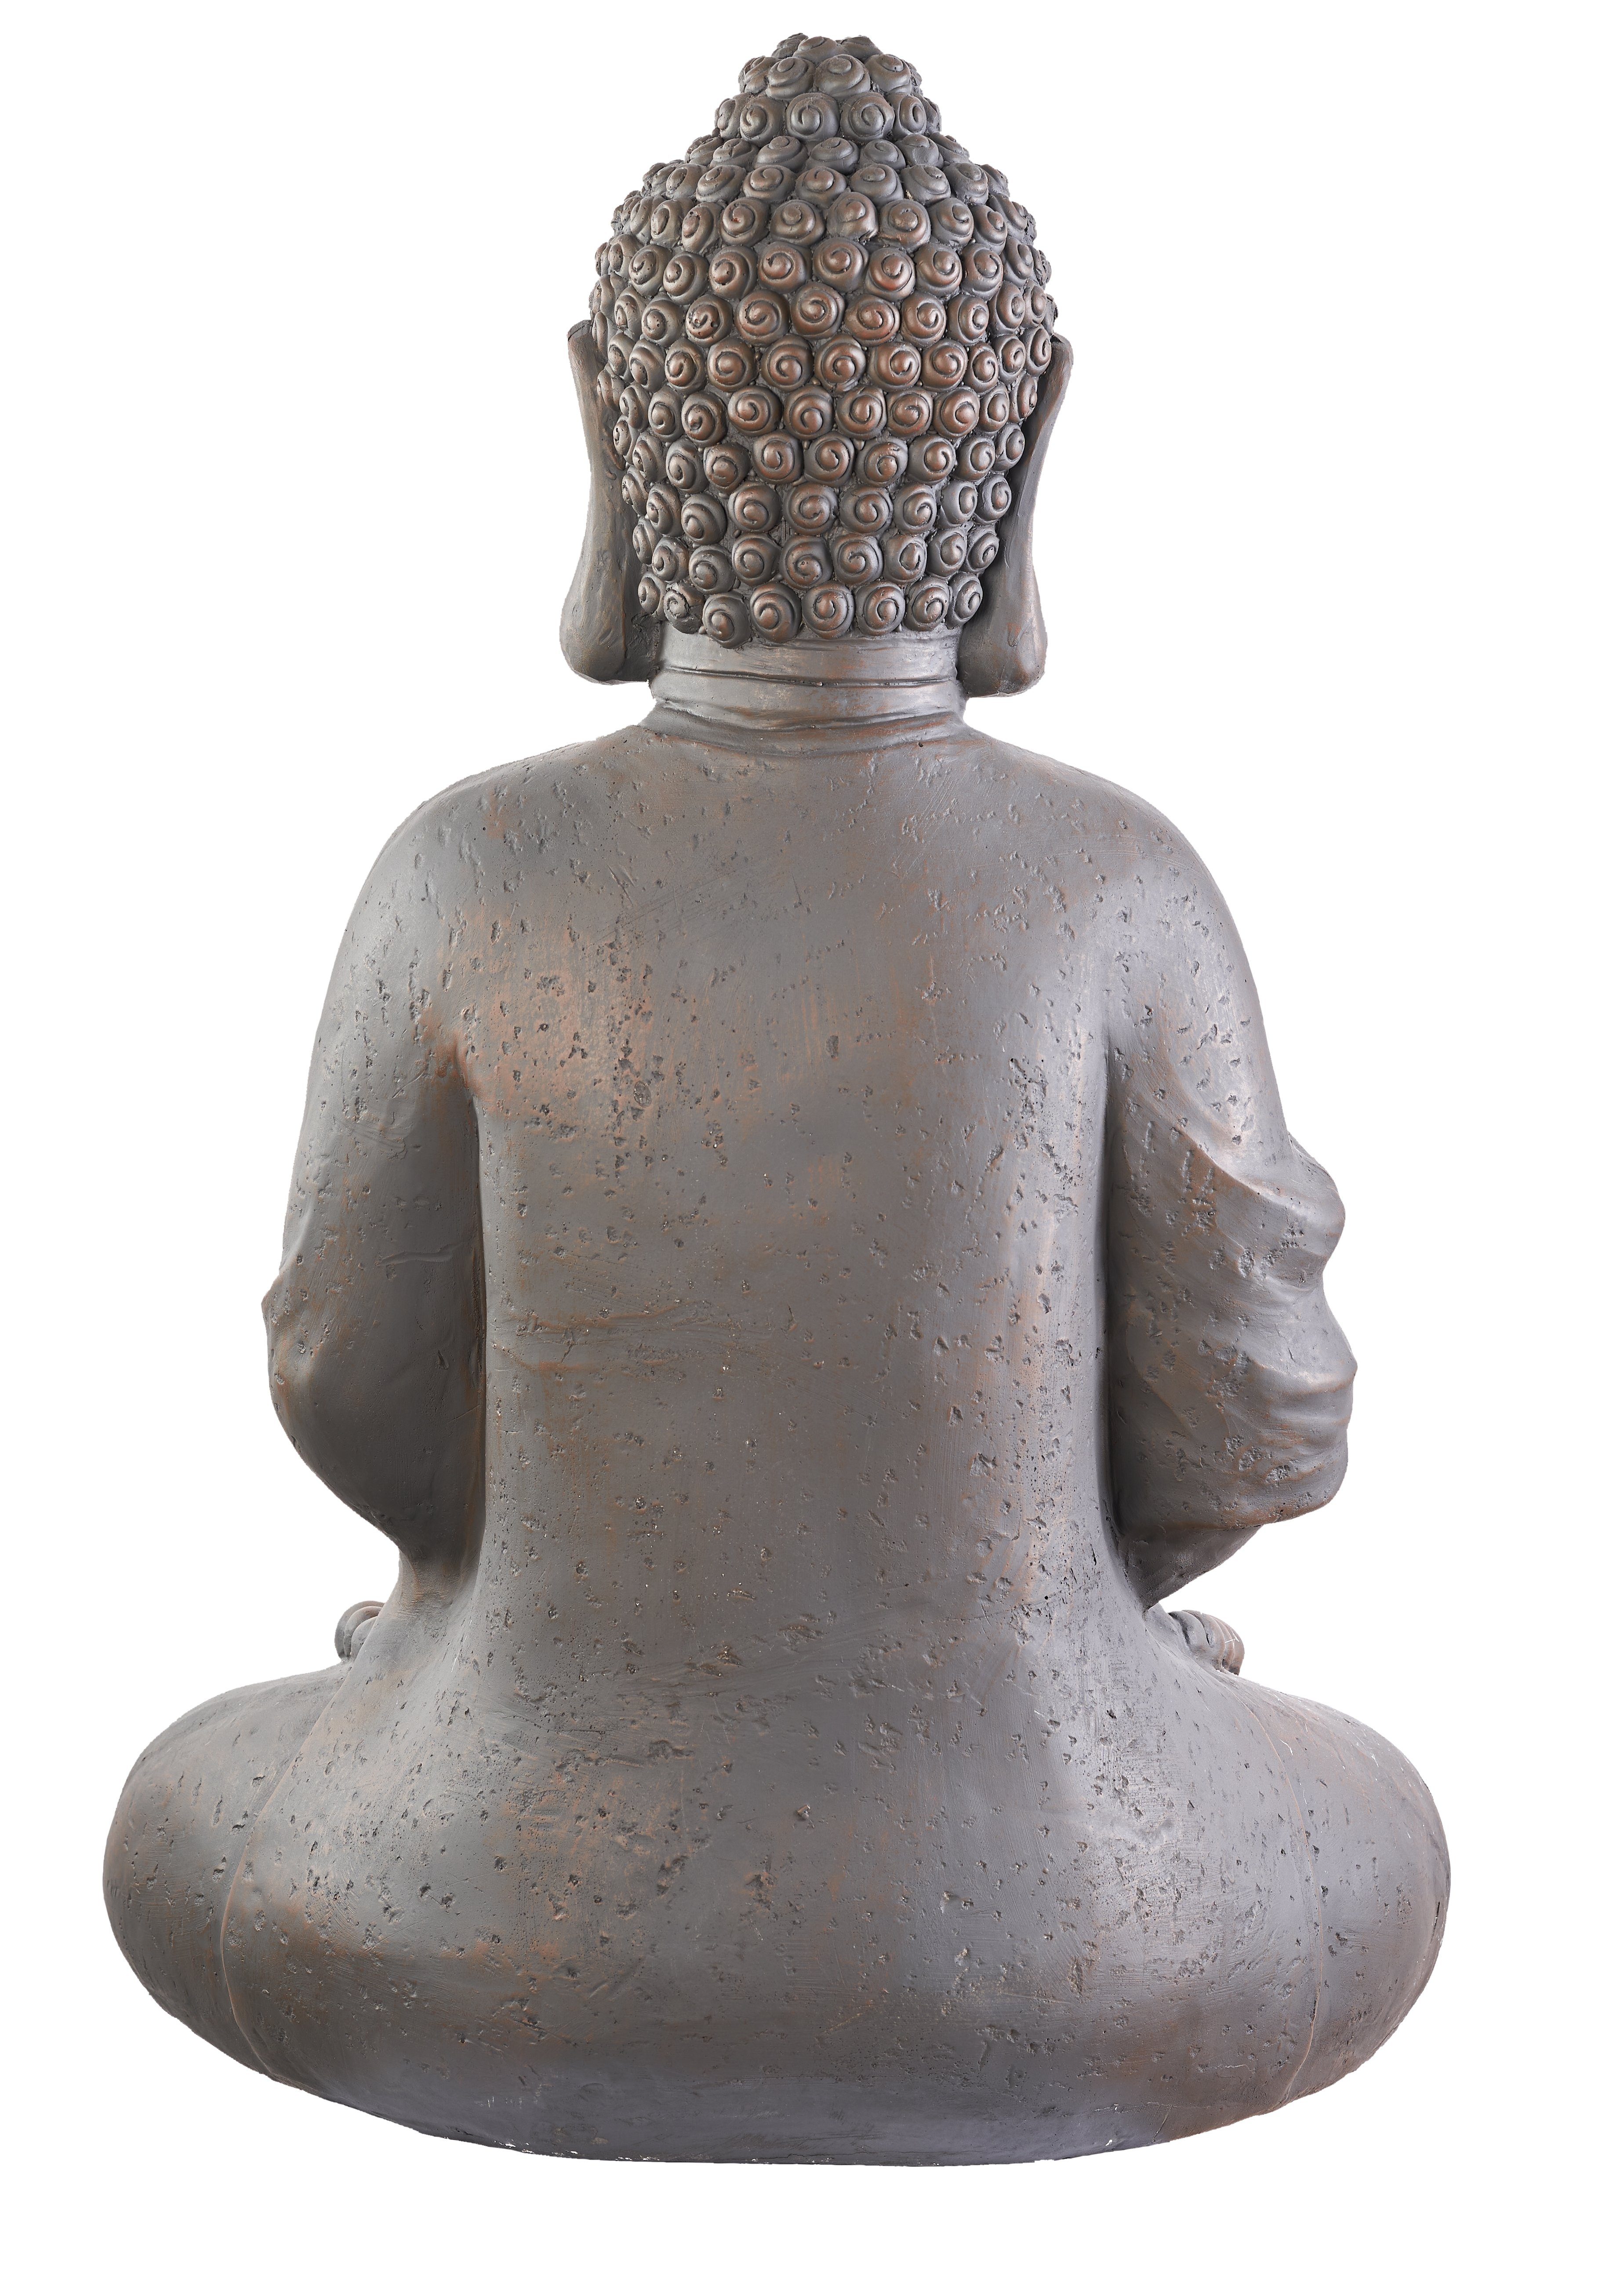 Deko NEUSTEIN Shui Feng cm Steinoptik Figur sitzend Garten Steinfigur-Optik dunkelbraun Buddha Skulptur 70 Buddhafigur Großer XXXL